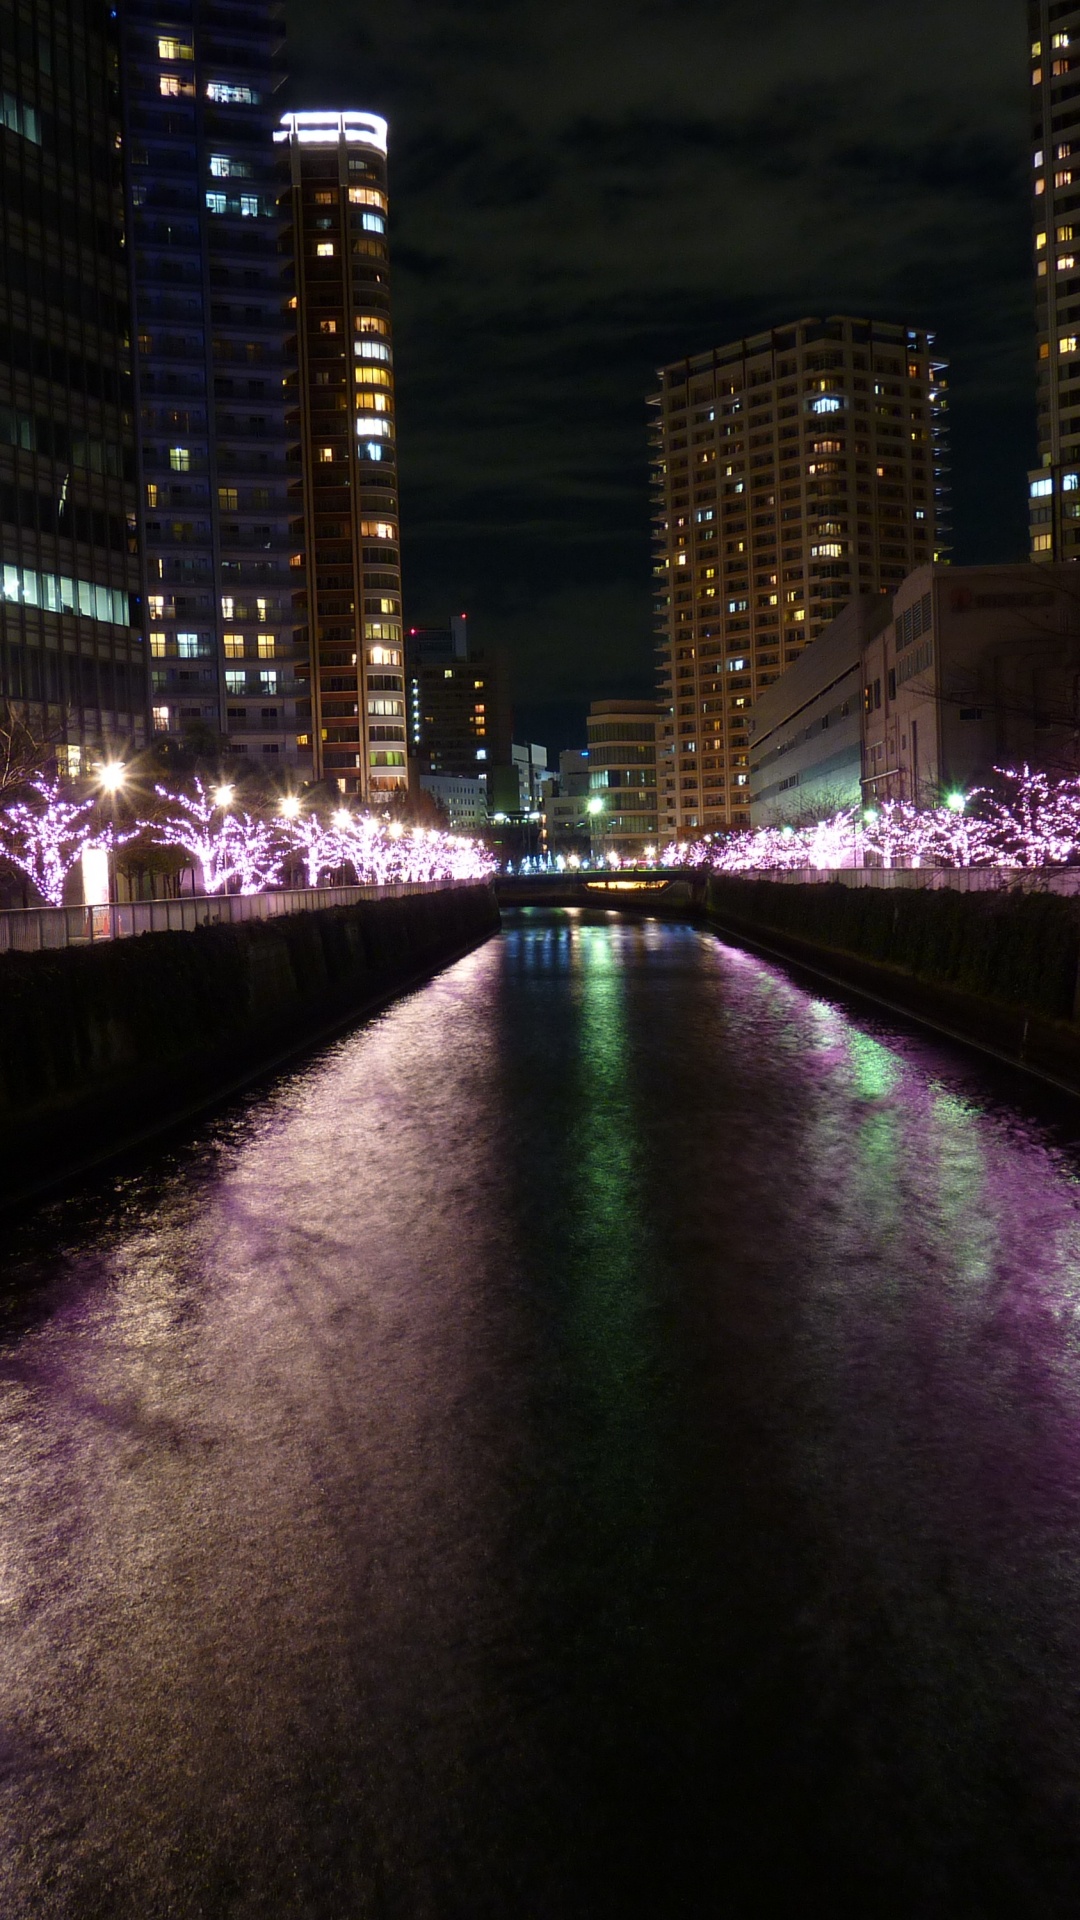 Lumières Violettes Sur le Pont Pendant la Nuit. Wallpaper in 1080x1920 Resolution